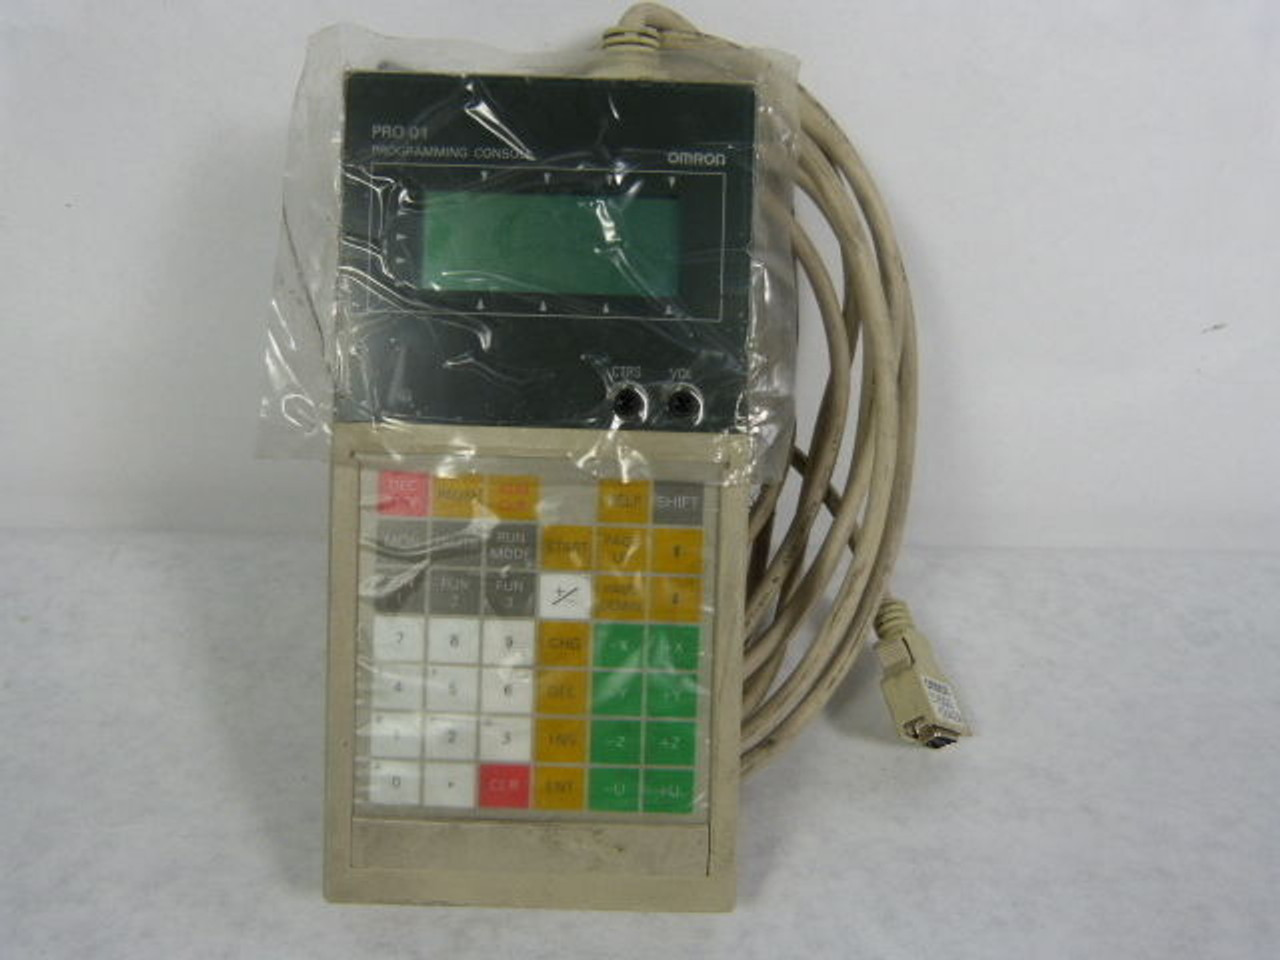 Omron CVM1-PRO01-V1 "Teaching Box" Hand-Held Programmer USED